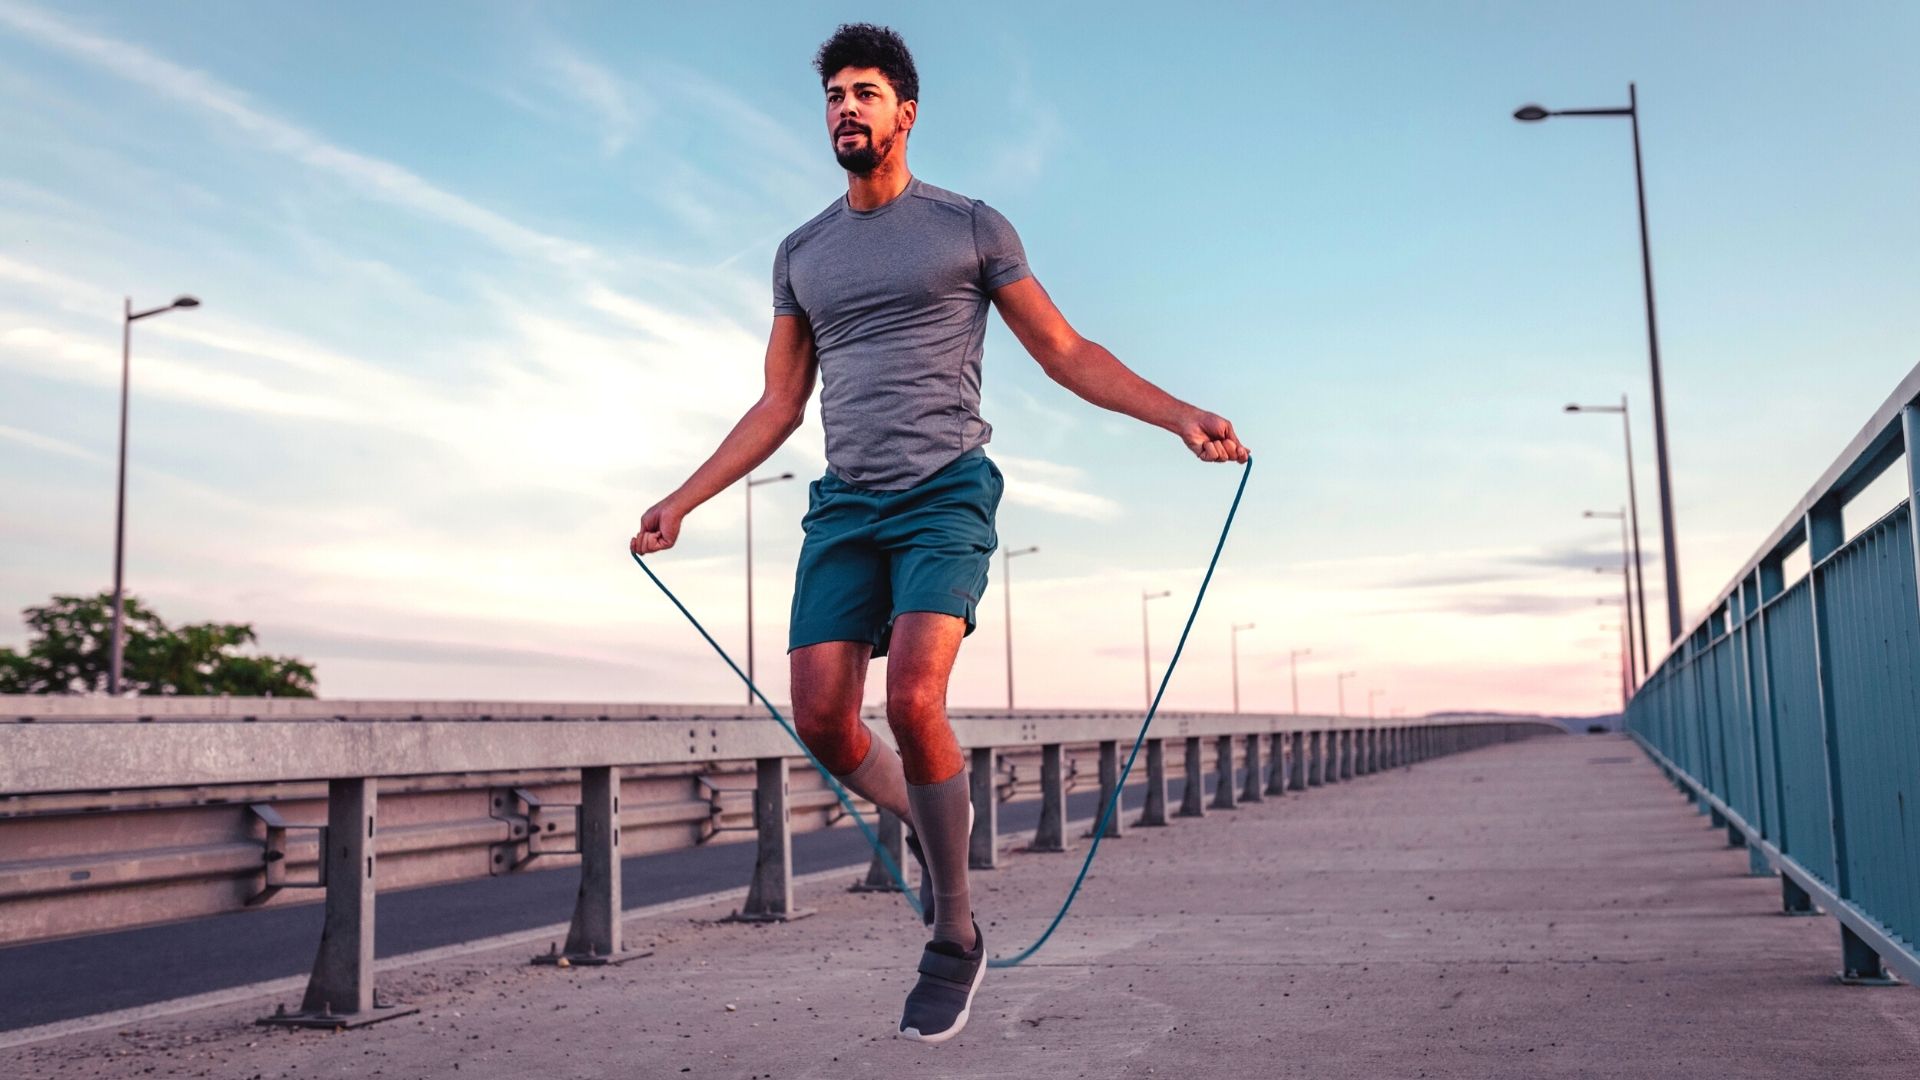 10-manfaat-latihan-skipping-bagi-kesehatan-tubuh